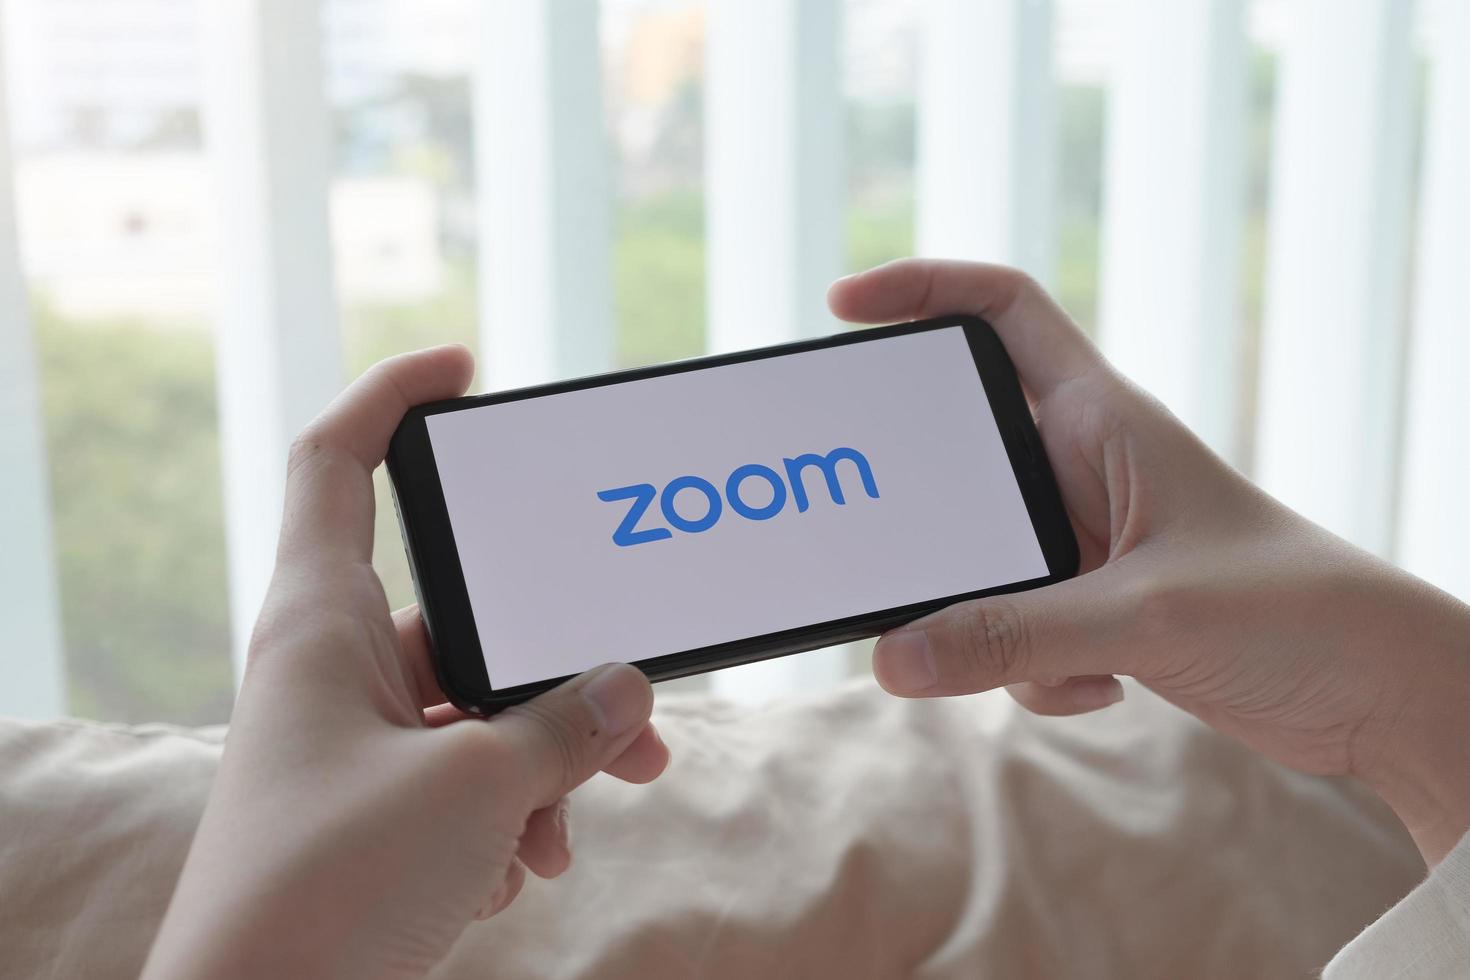 chiang mai, tailândia, mar, 21, 2021 - pessoa conectando no zoom em um smartphone foto